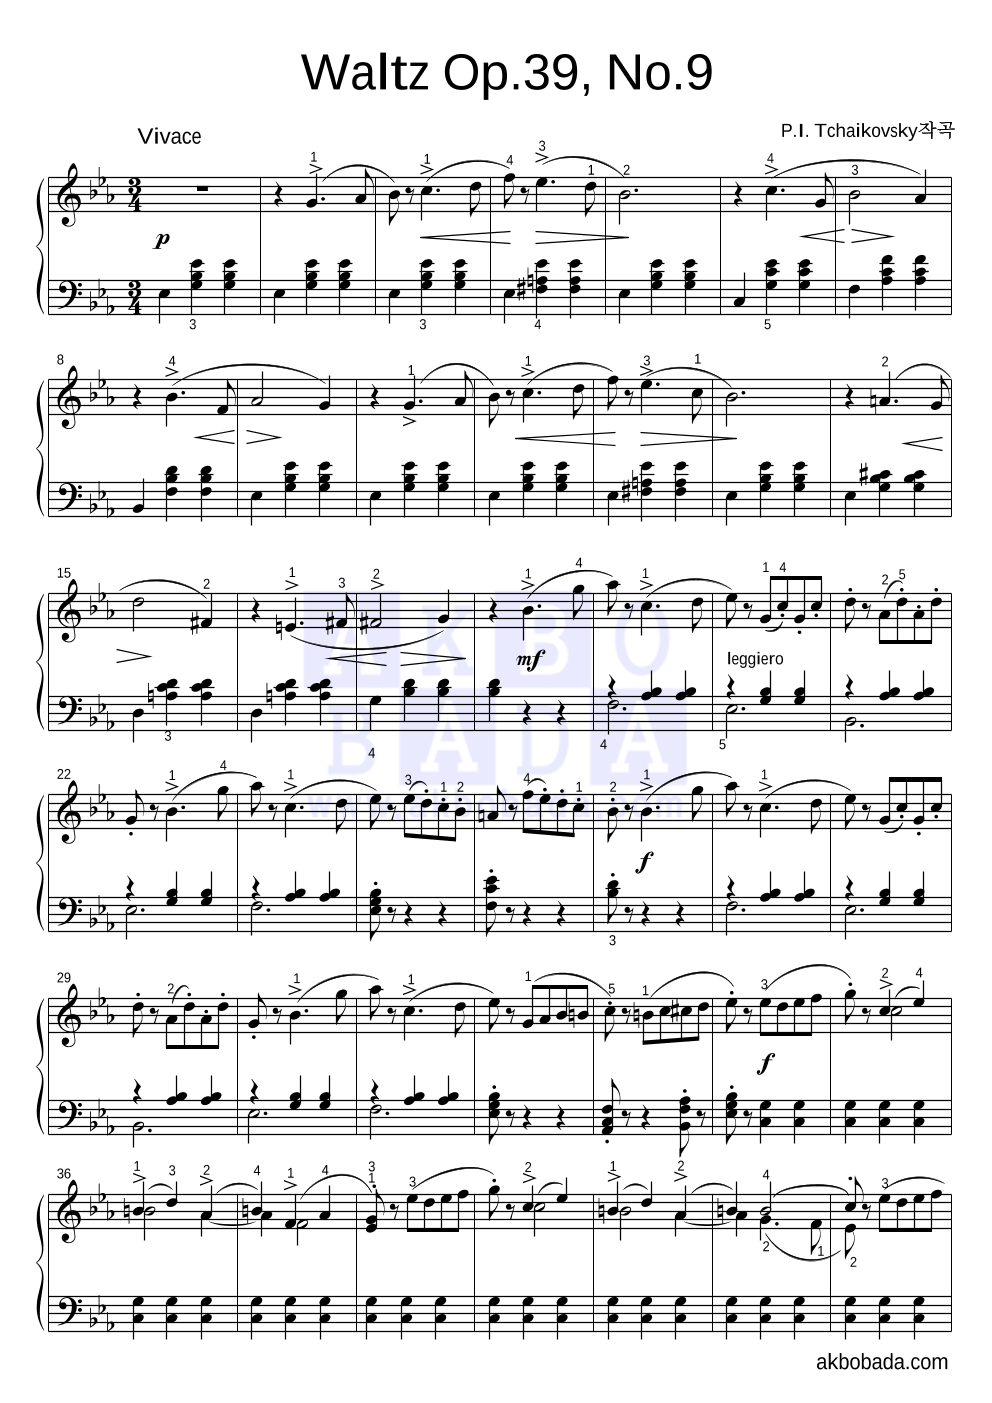 차이코프스키 - Waltz Op.39, No.9 피아노 2단 악보 